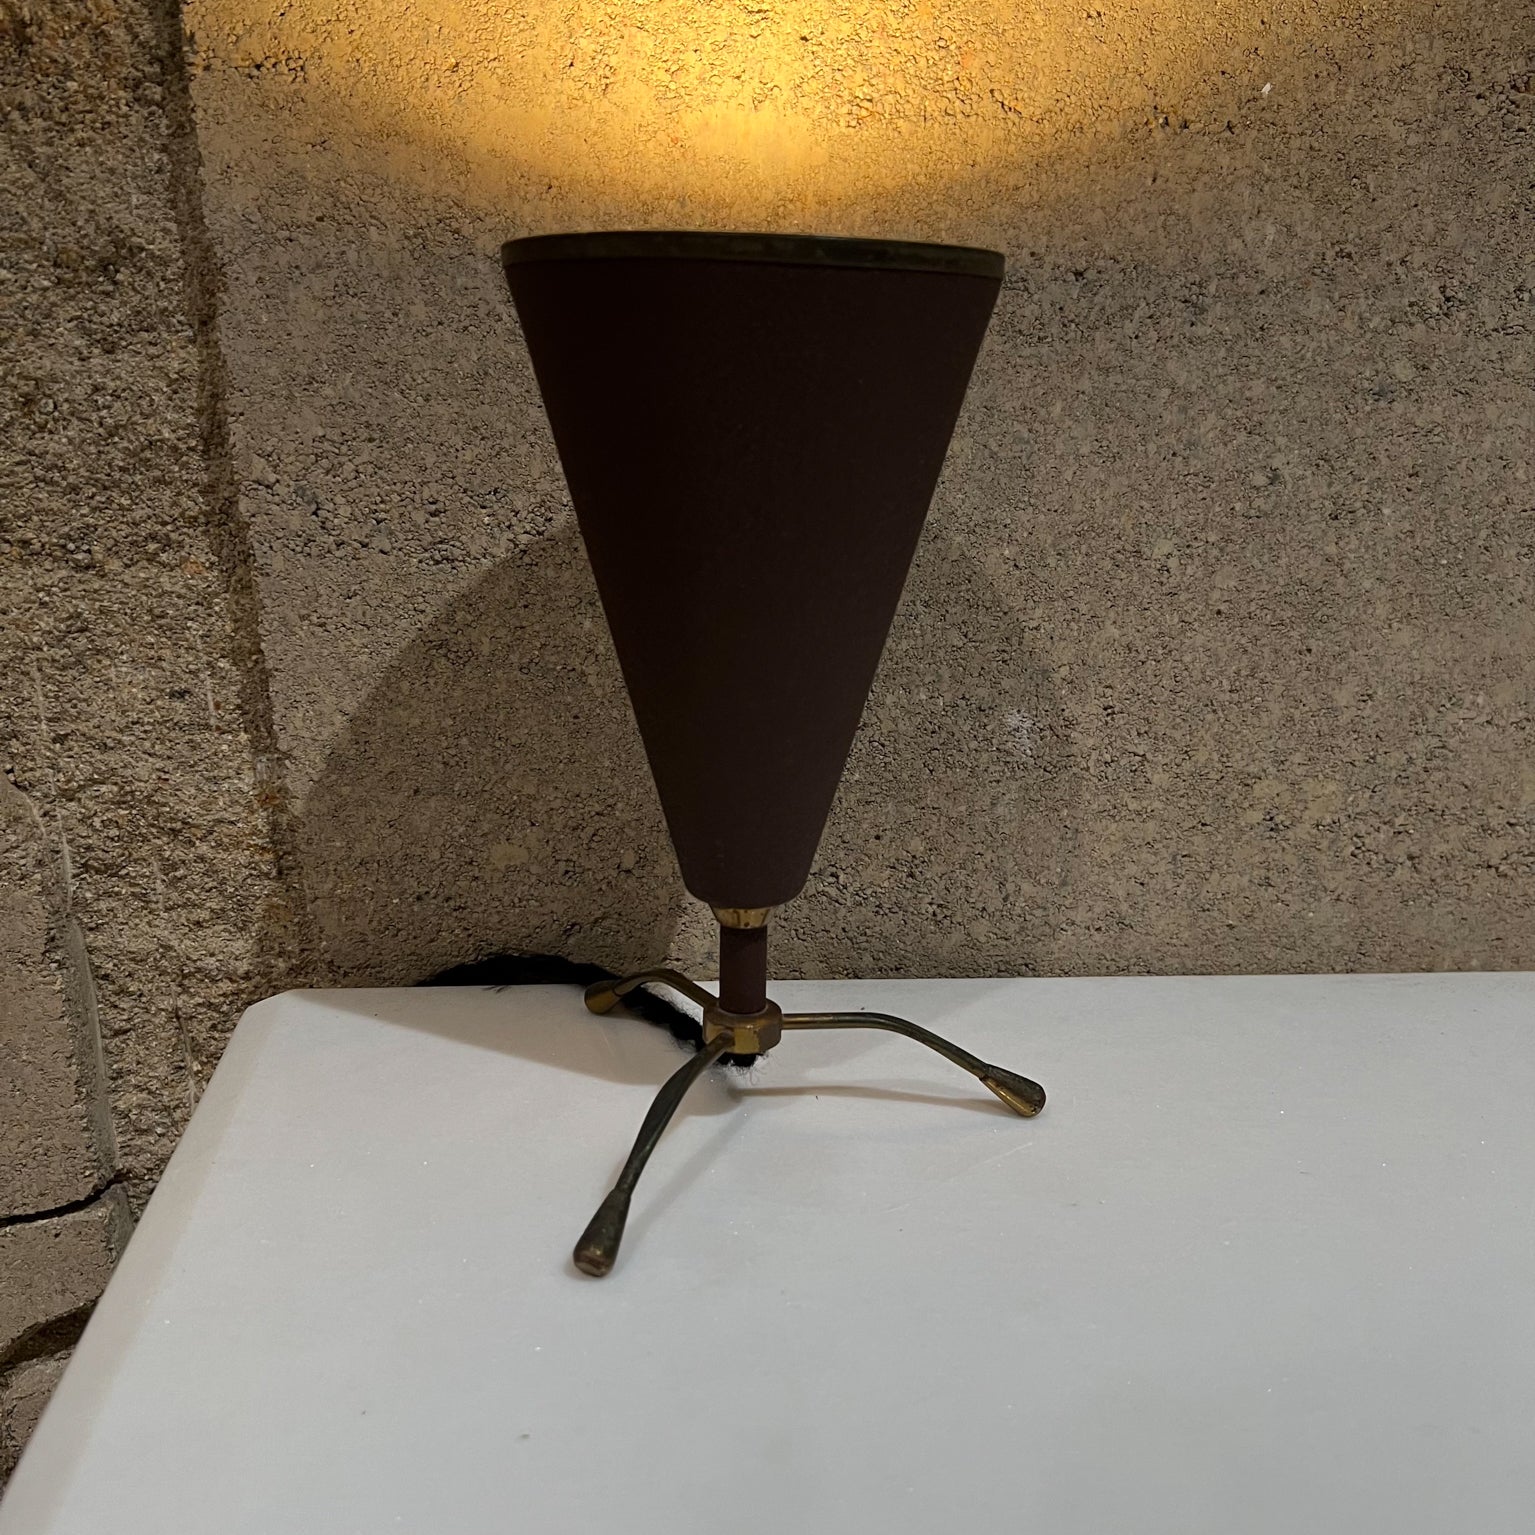 Schreibtisch-Tischlampe
Moderne italienische Tischlampe mit Dreibein aus der Jahrhundertmitte. Italien, 1950er Jahre
Unmarkiert, wird Stilnovo zugeschrieben.
Maße: 8 hoch x 5,25 Durchmesser
Gebrauchter, unrestaurierter Originalzustand.
Siehe